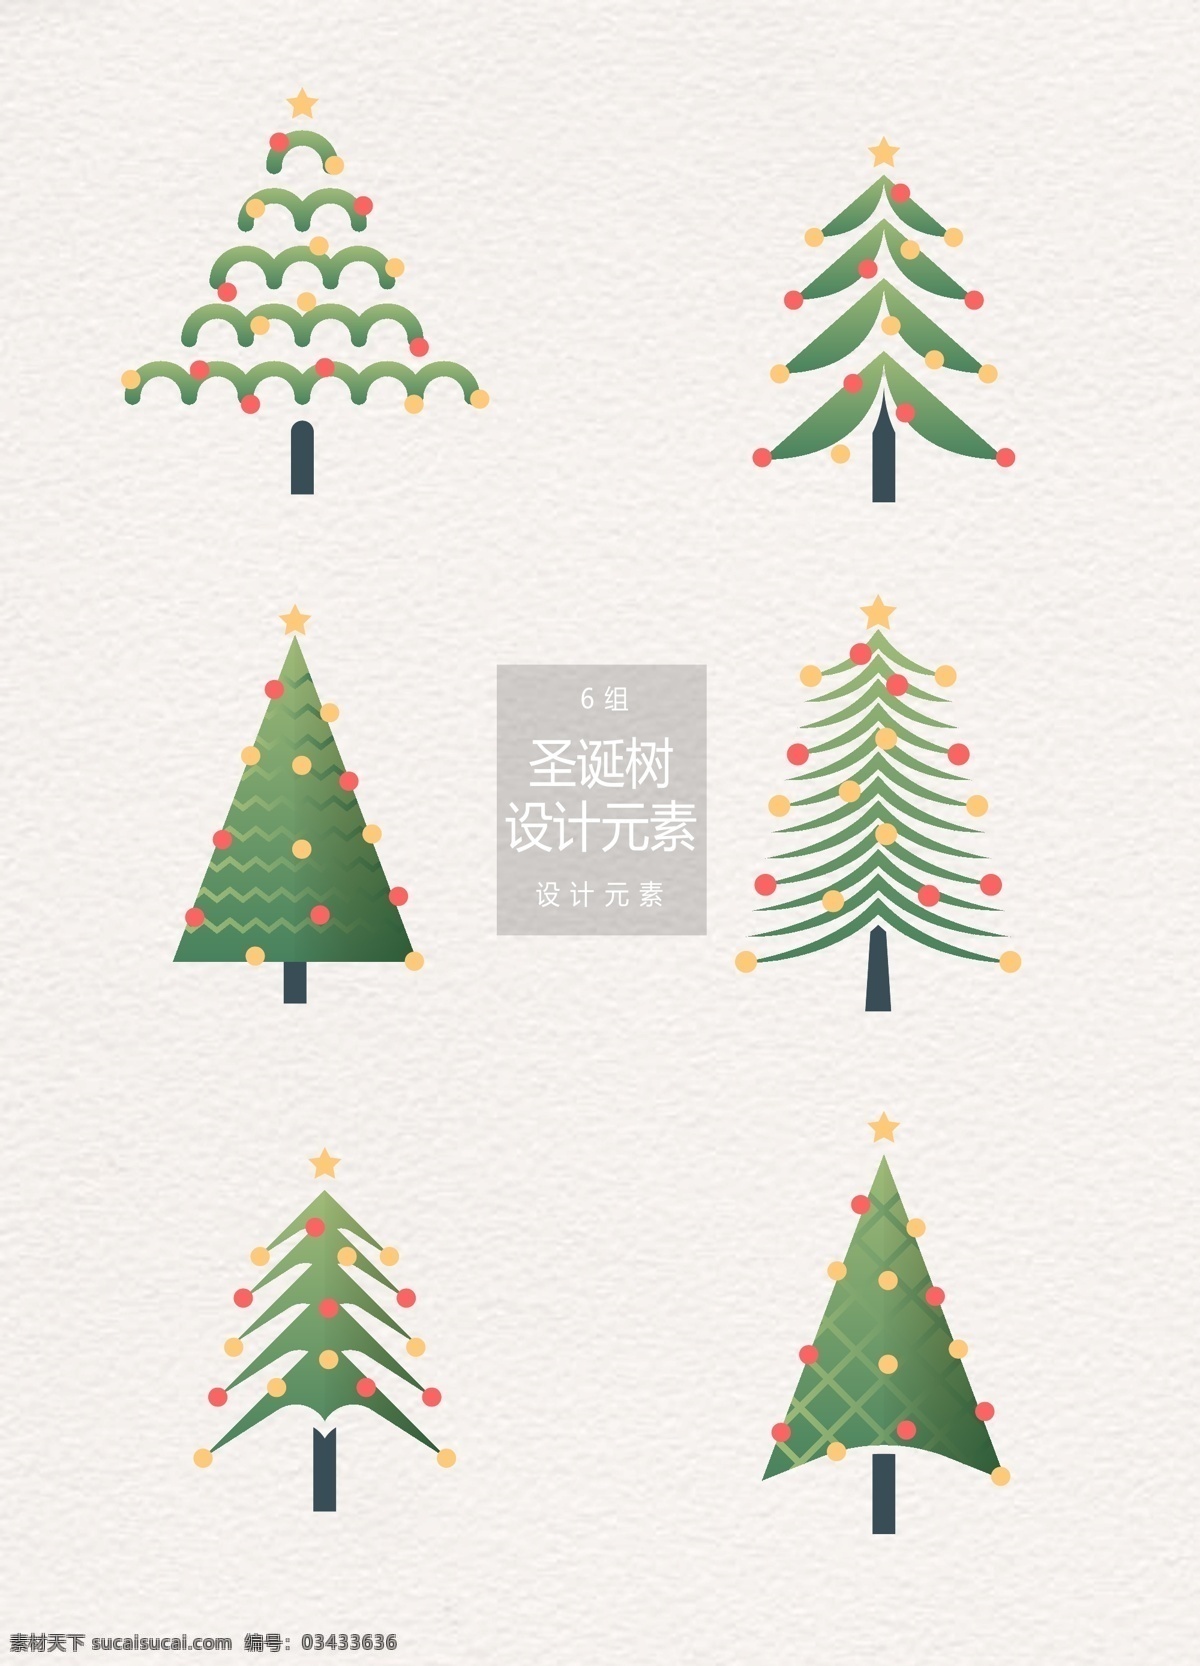 圣诞节 圣诞树 元素 矢量圣诞树 设计元素 抽象圣诞树 树木 圣诞 树